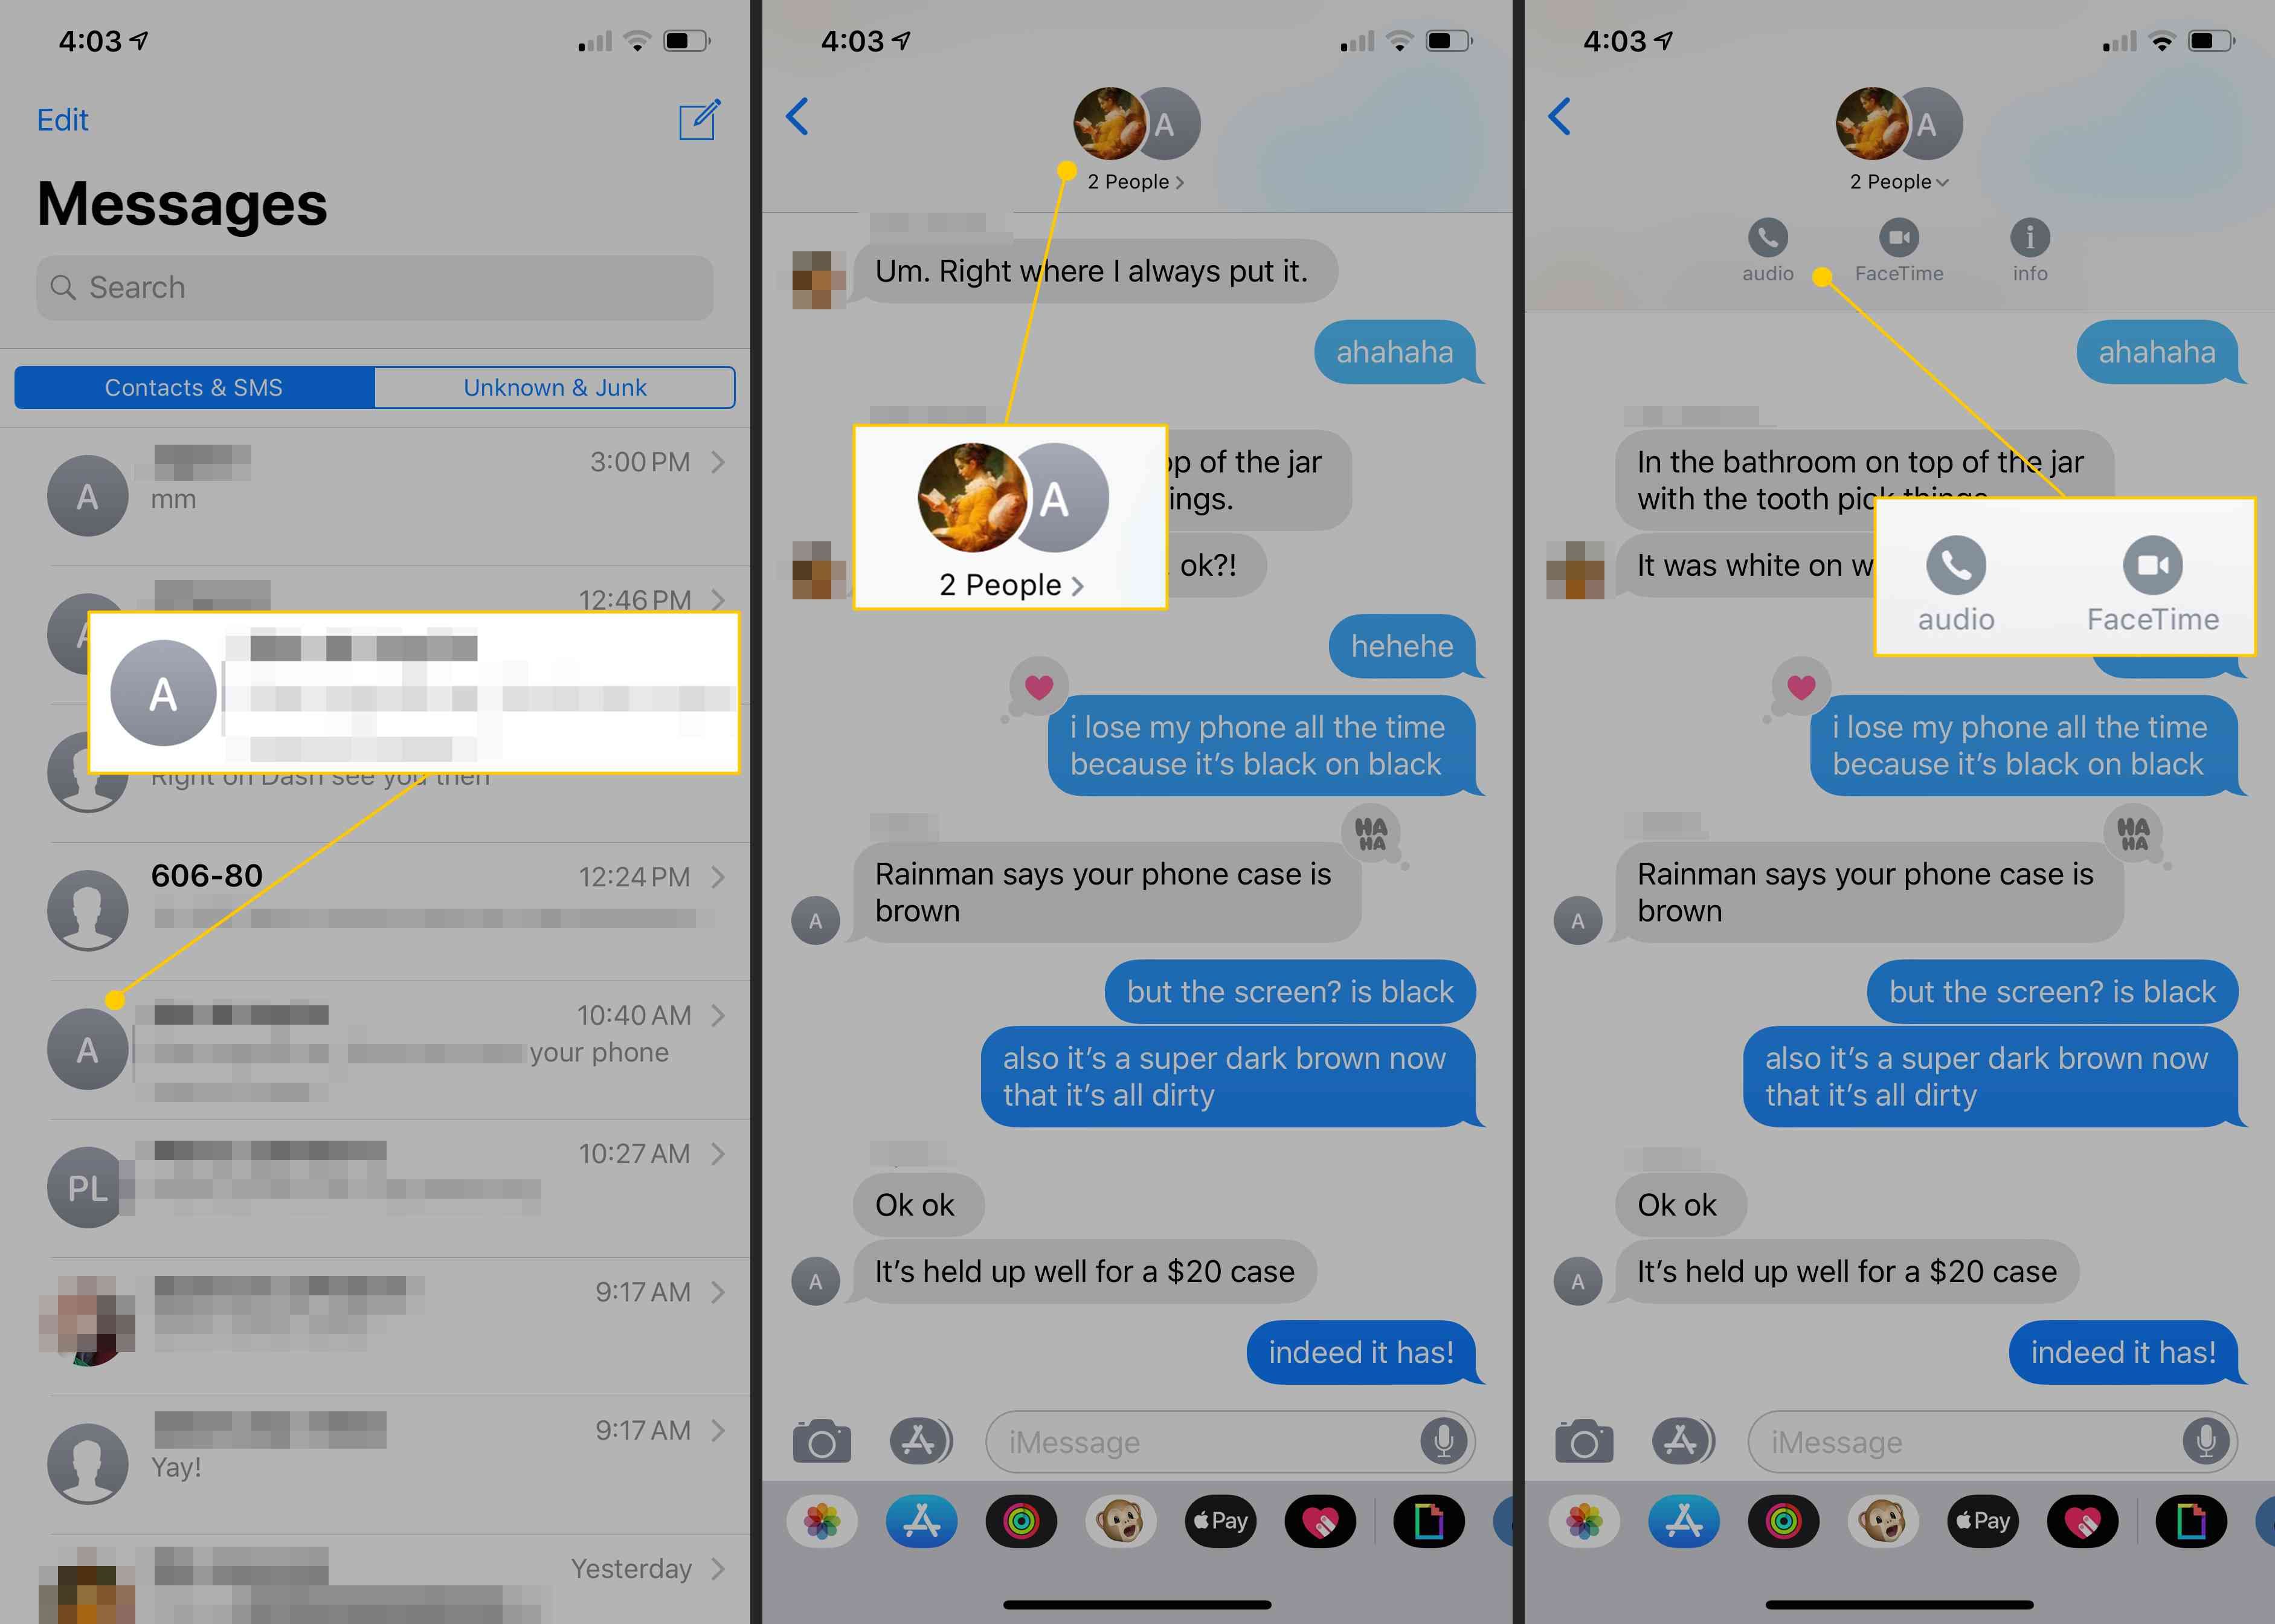 Сообщение группы, значки участников, аудио или опции FaceTime в iOS